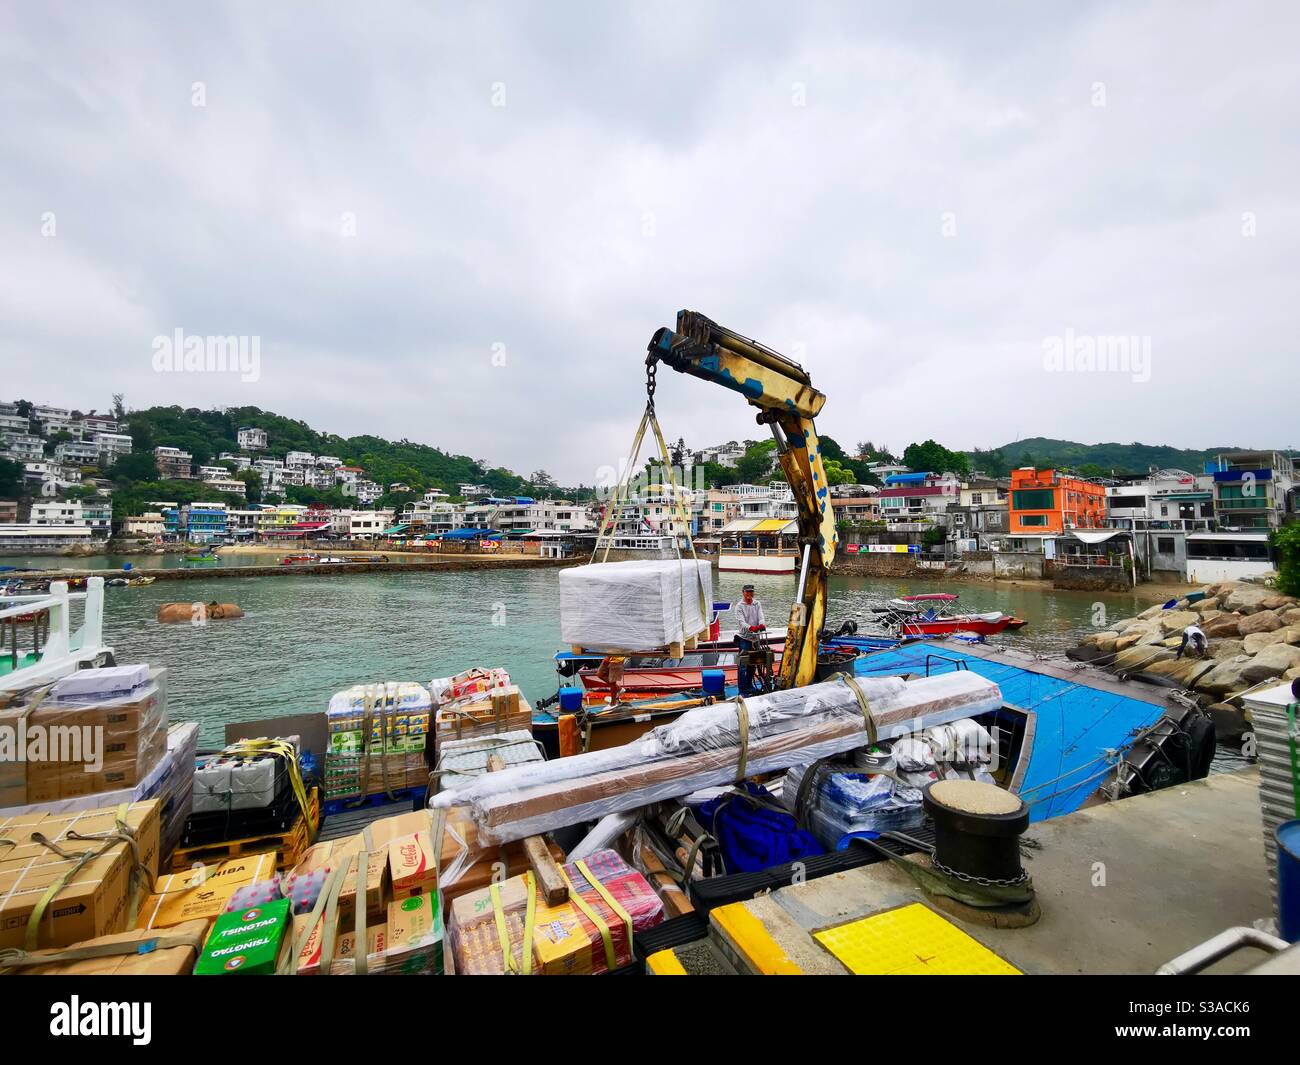 Le navire Gaido déchargeant des marchandises à l'embarcadère Yung shue wan de l'île lamma. Banque D'Images